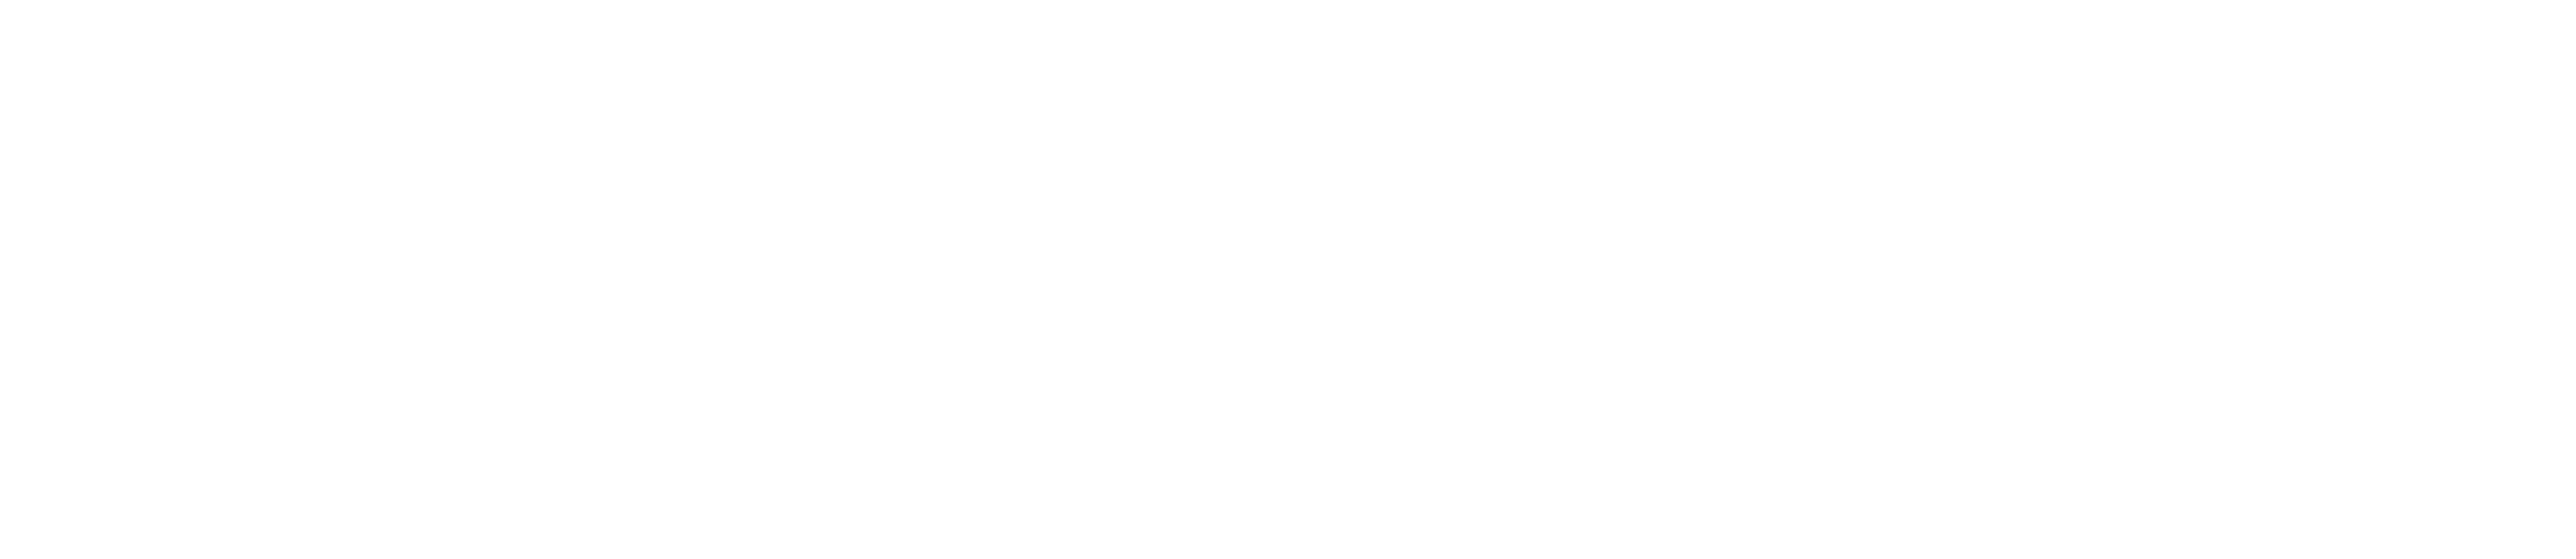 Sartorius Quartier